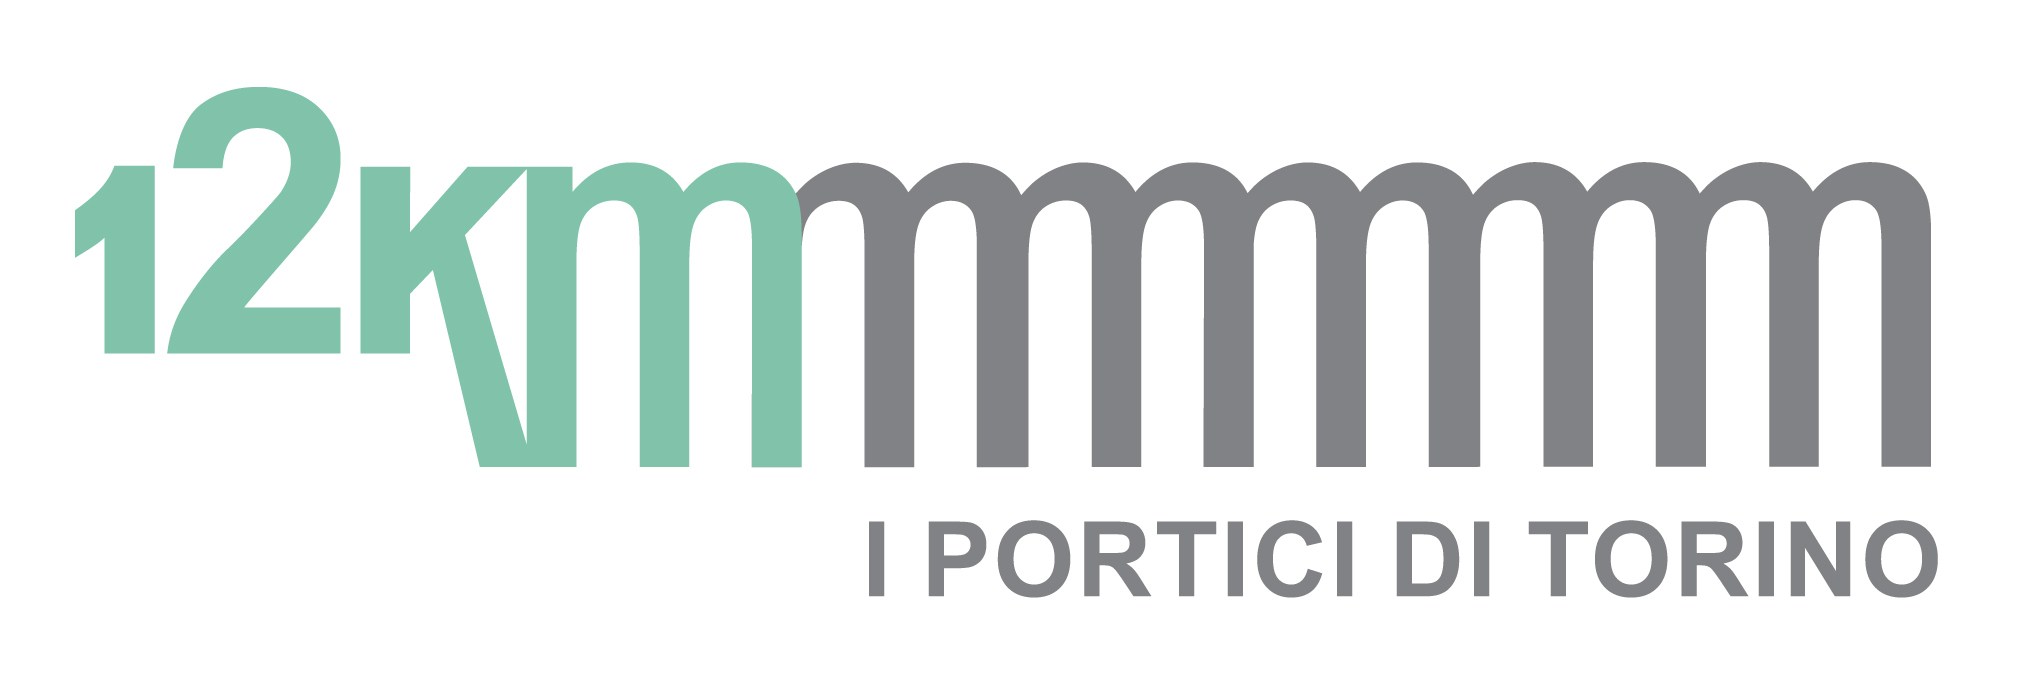 Photo of 12Km è il marchio dei portici di Torino: un logo per esportare questa eccellenza torinese